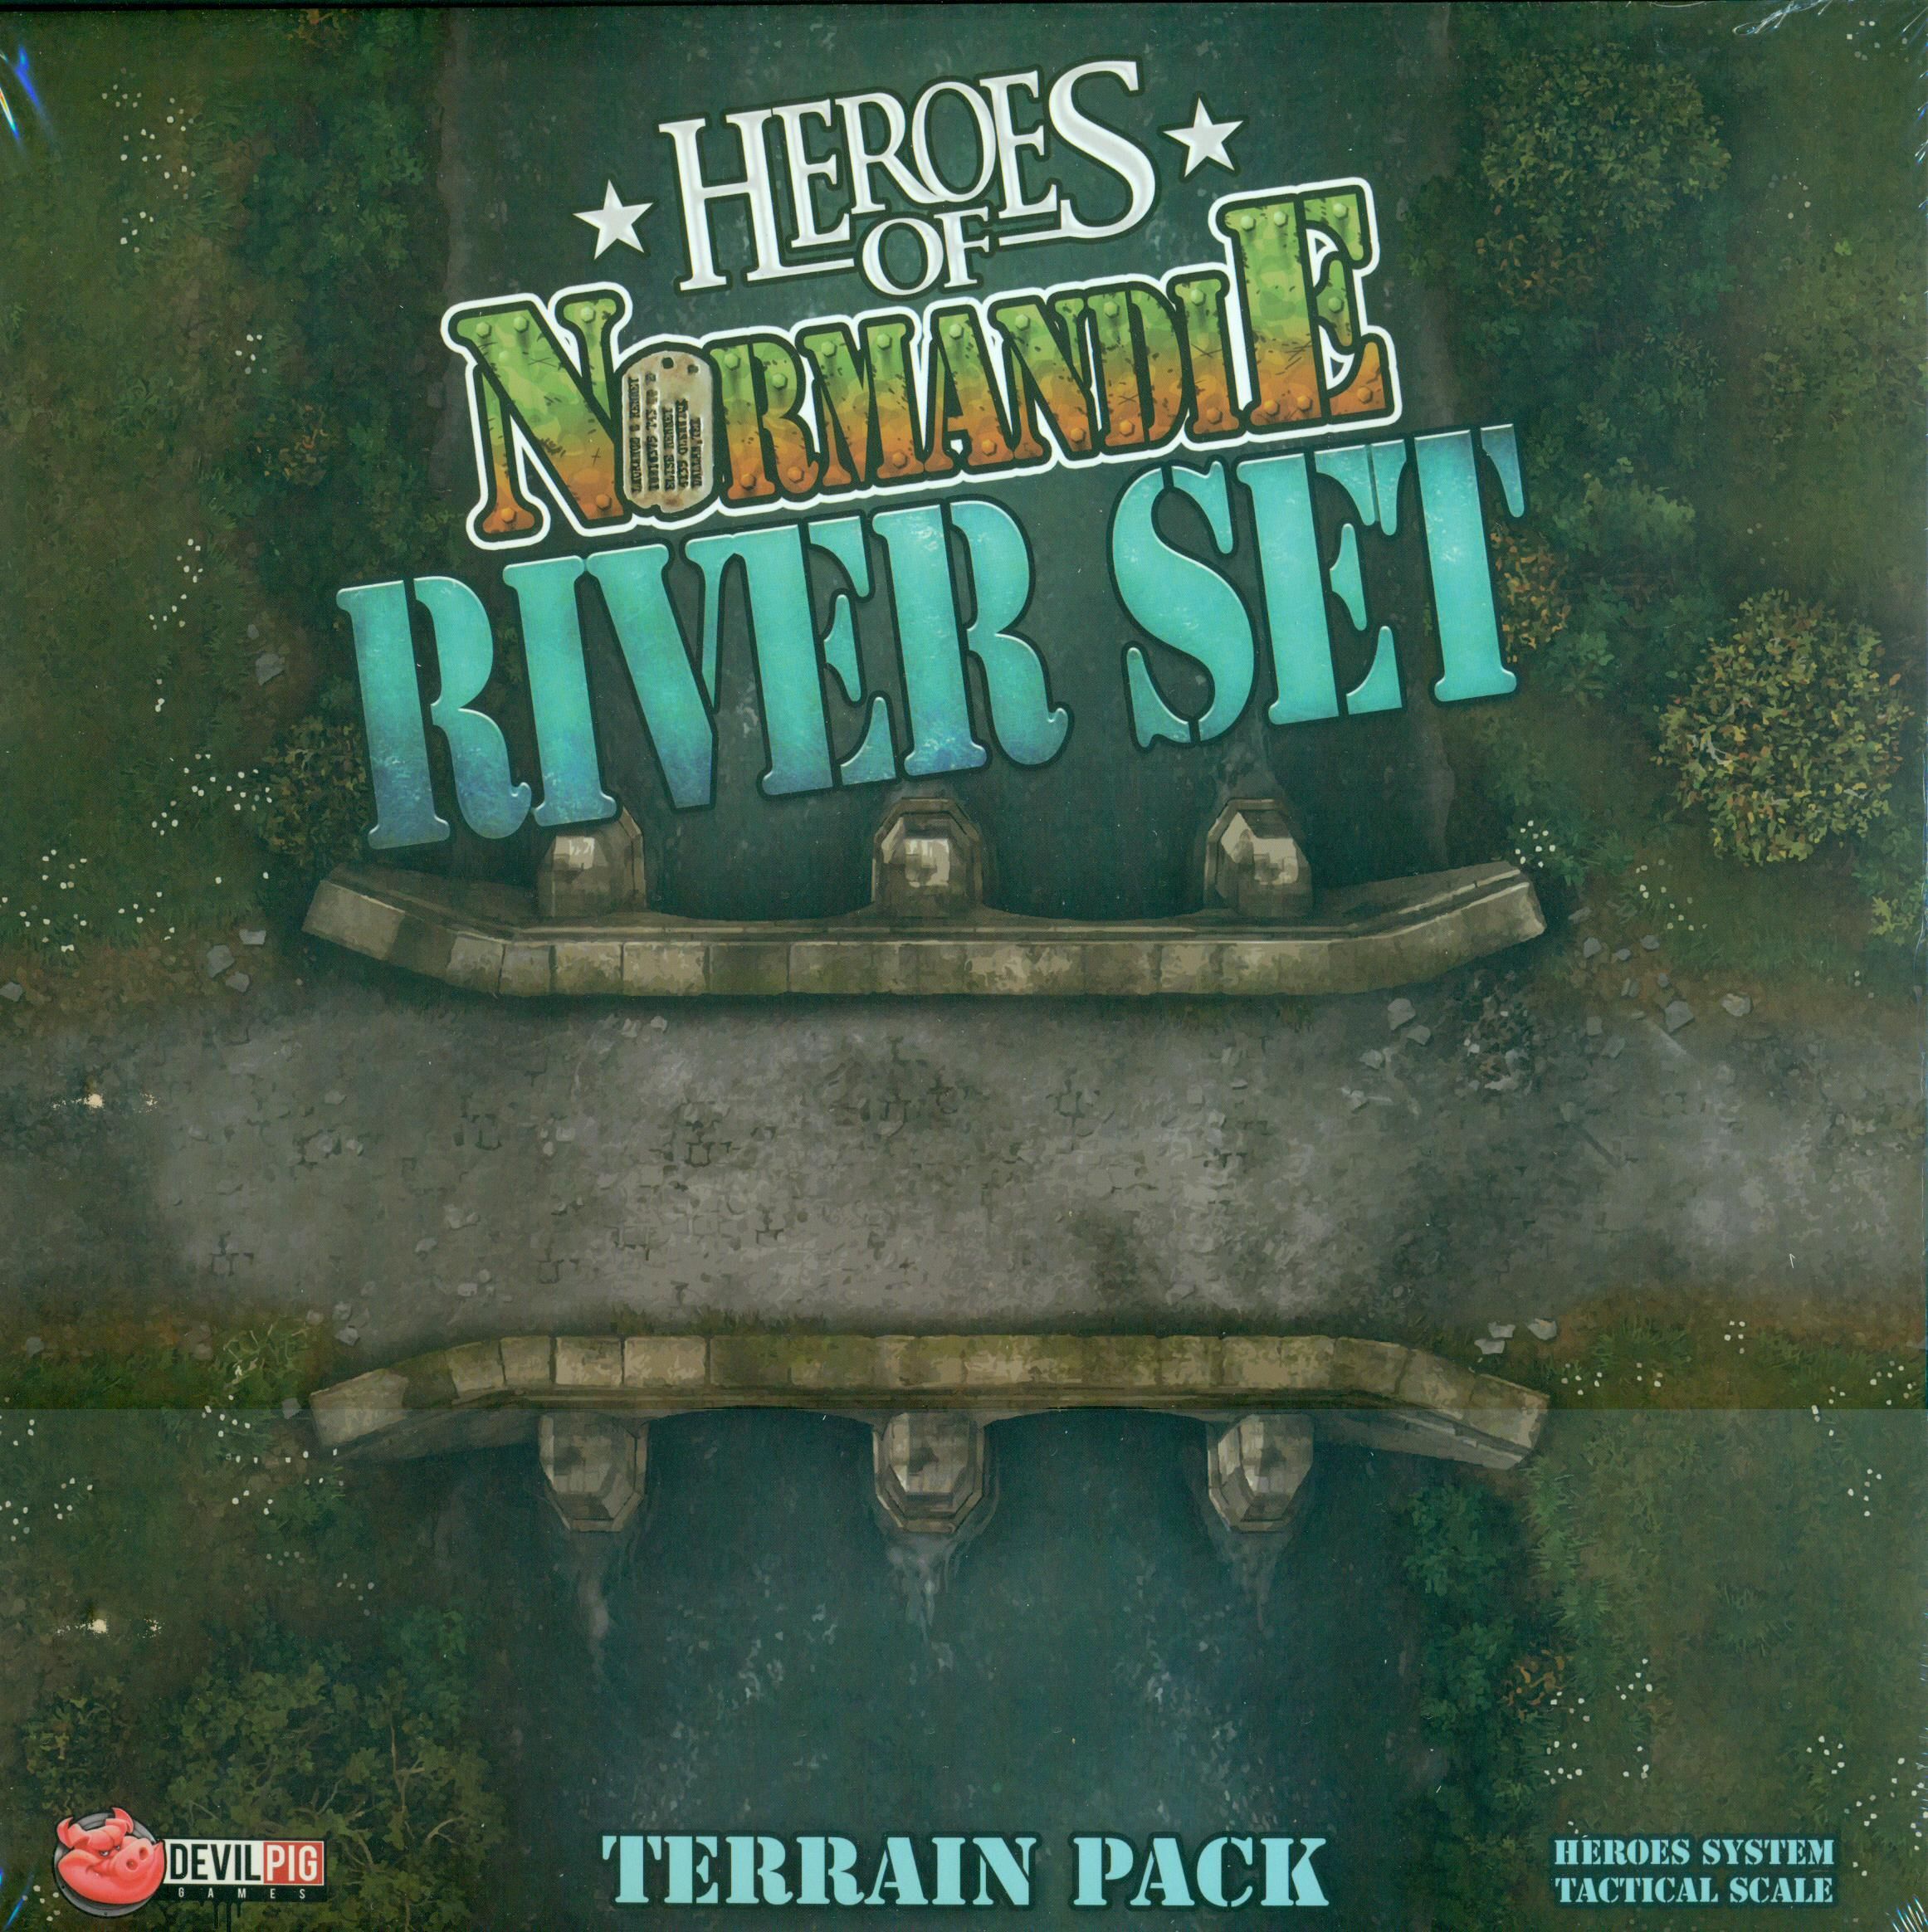 Heroes of Normandie: River Set Terrain Pack